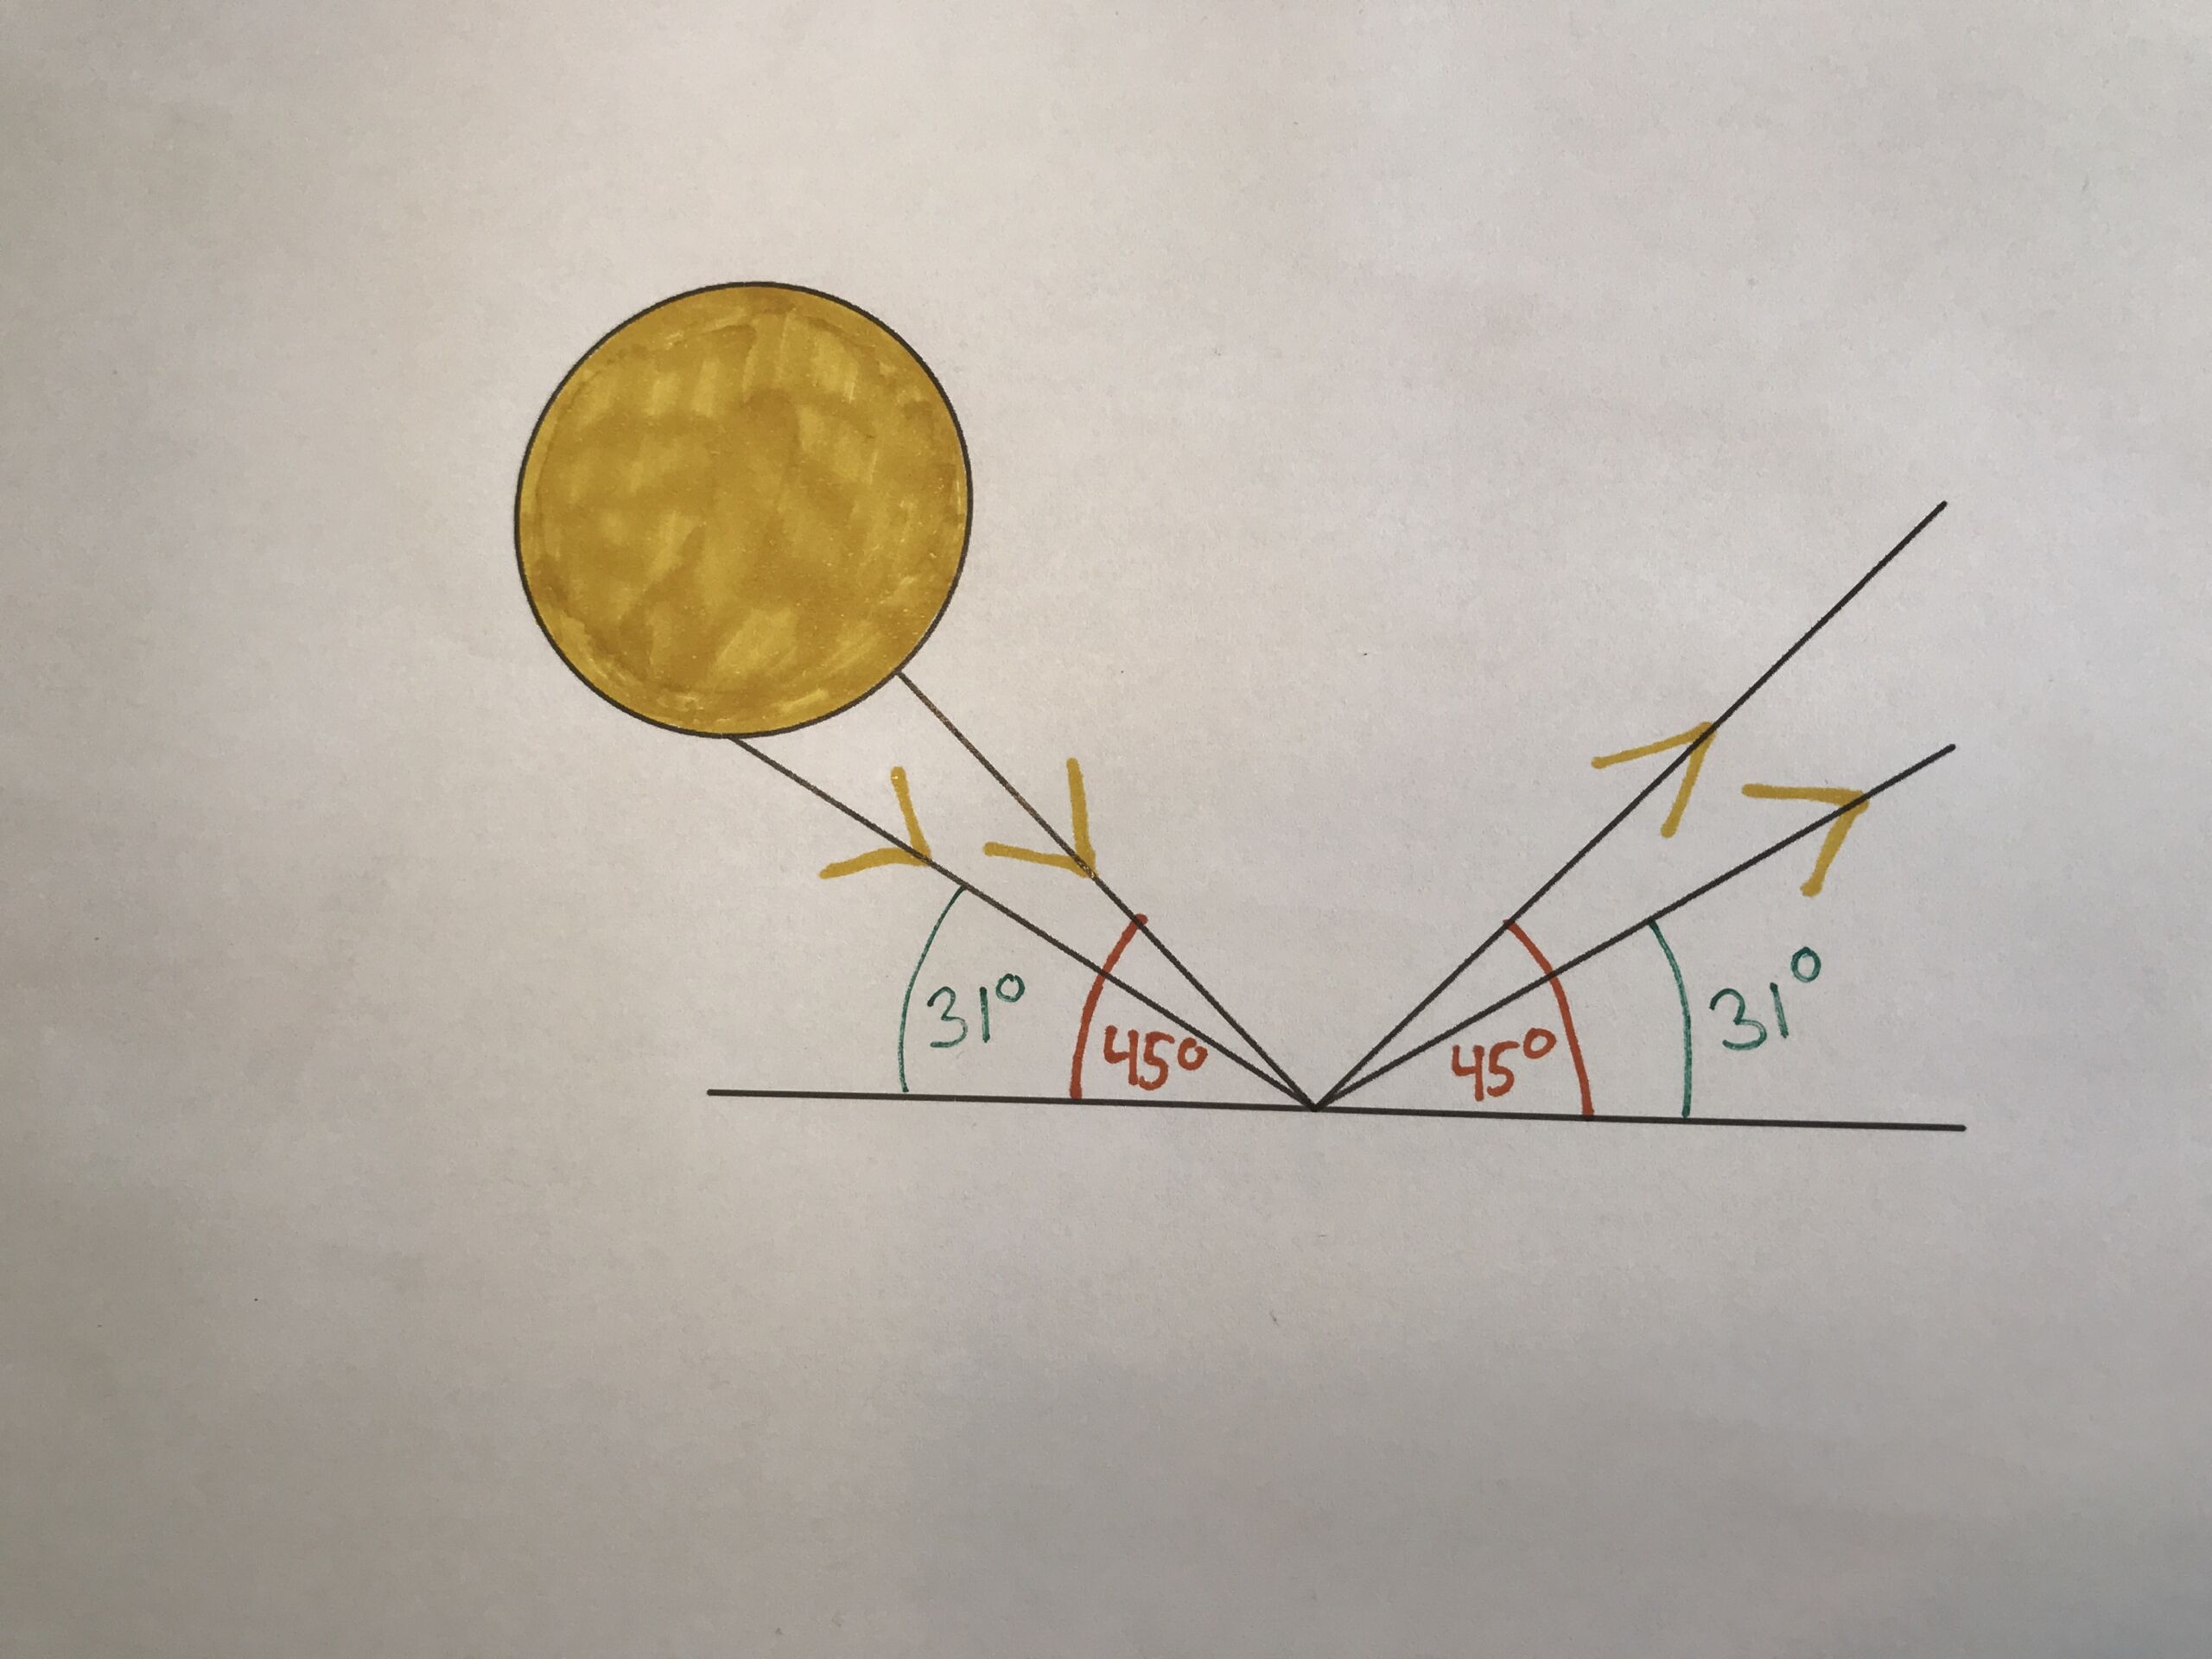 Tegning og model af solens reflektion